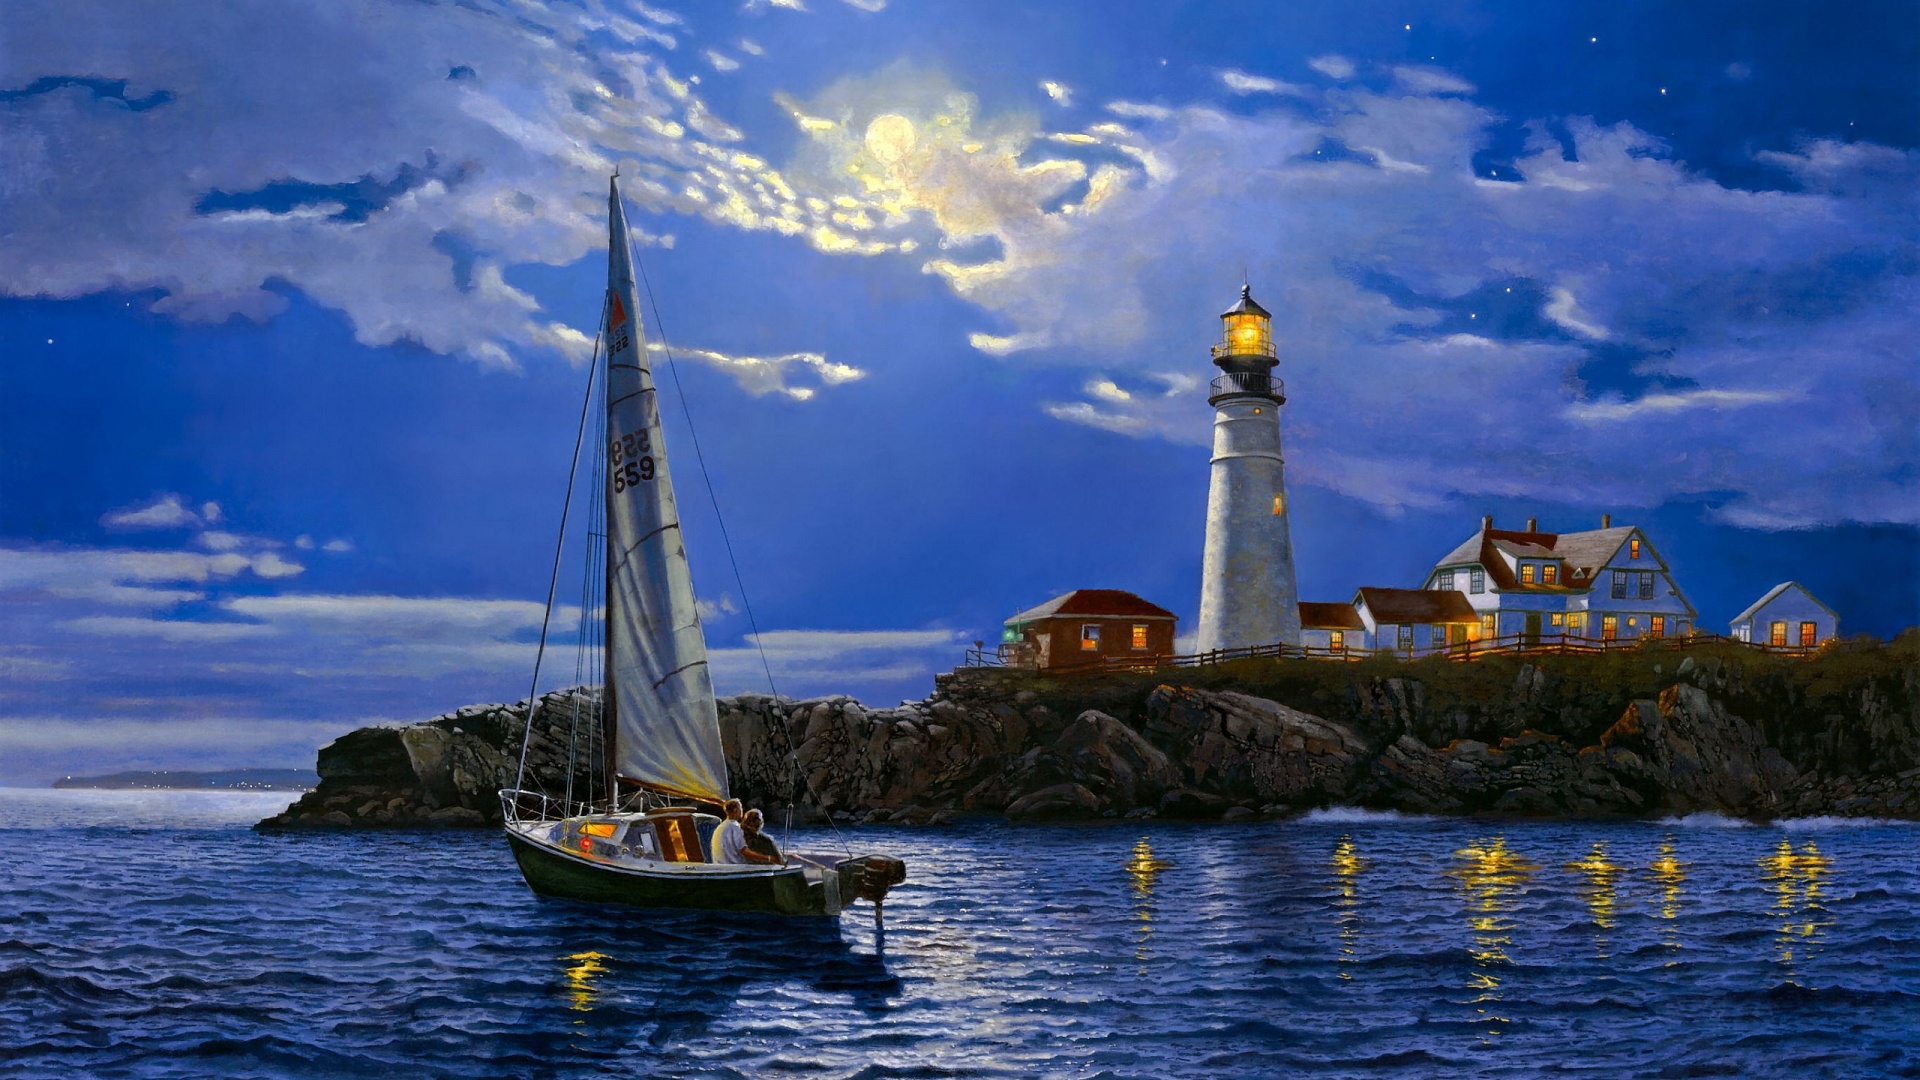 sailboat at night lights